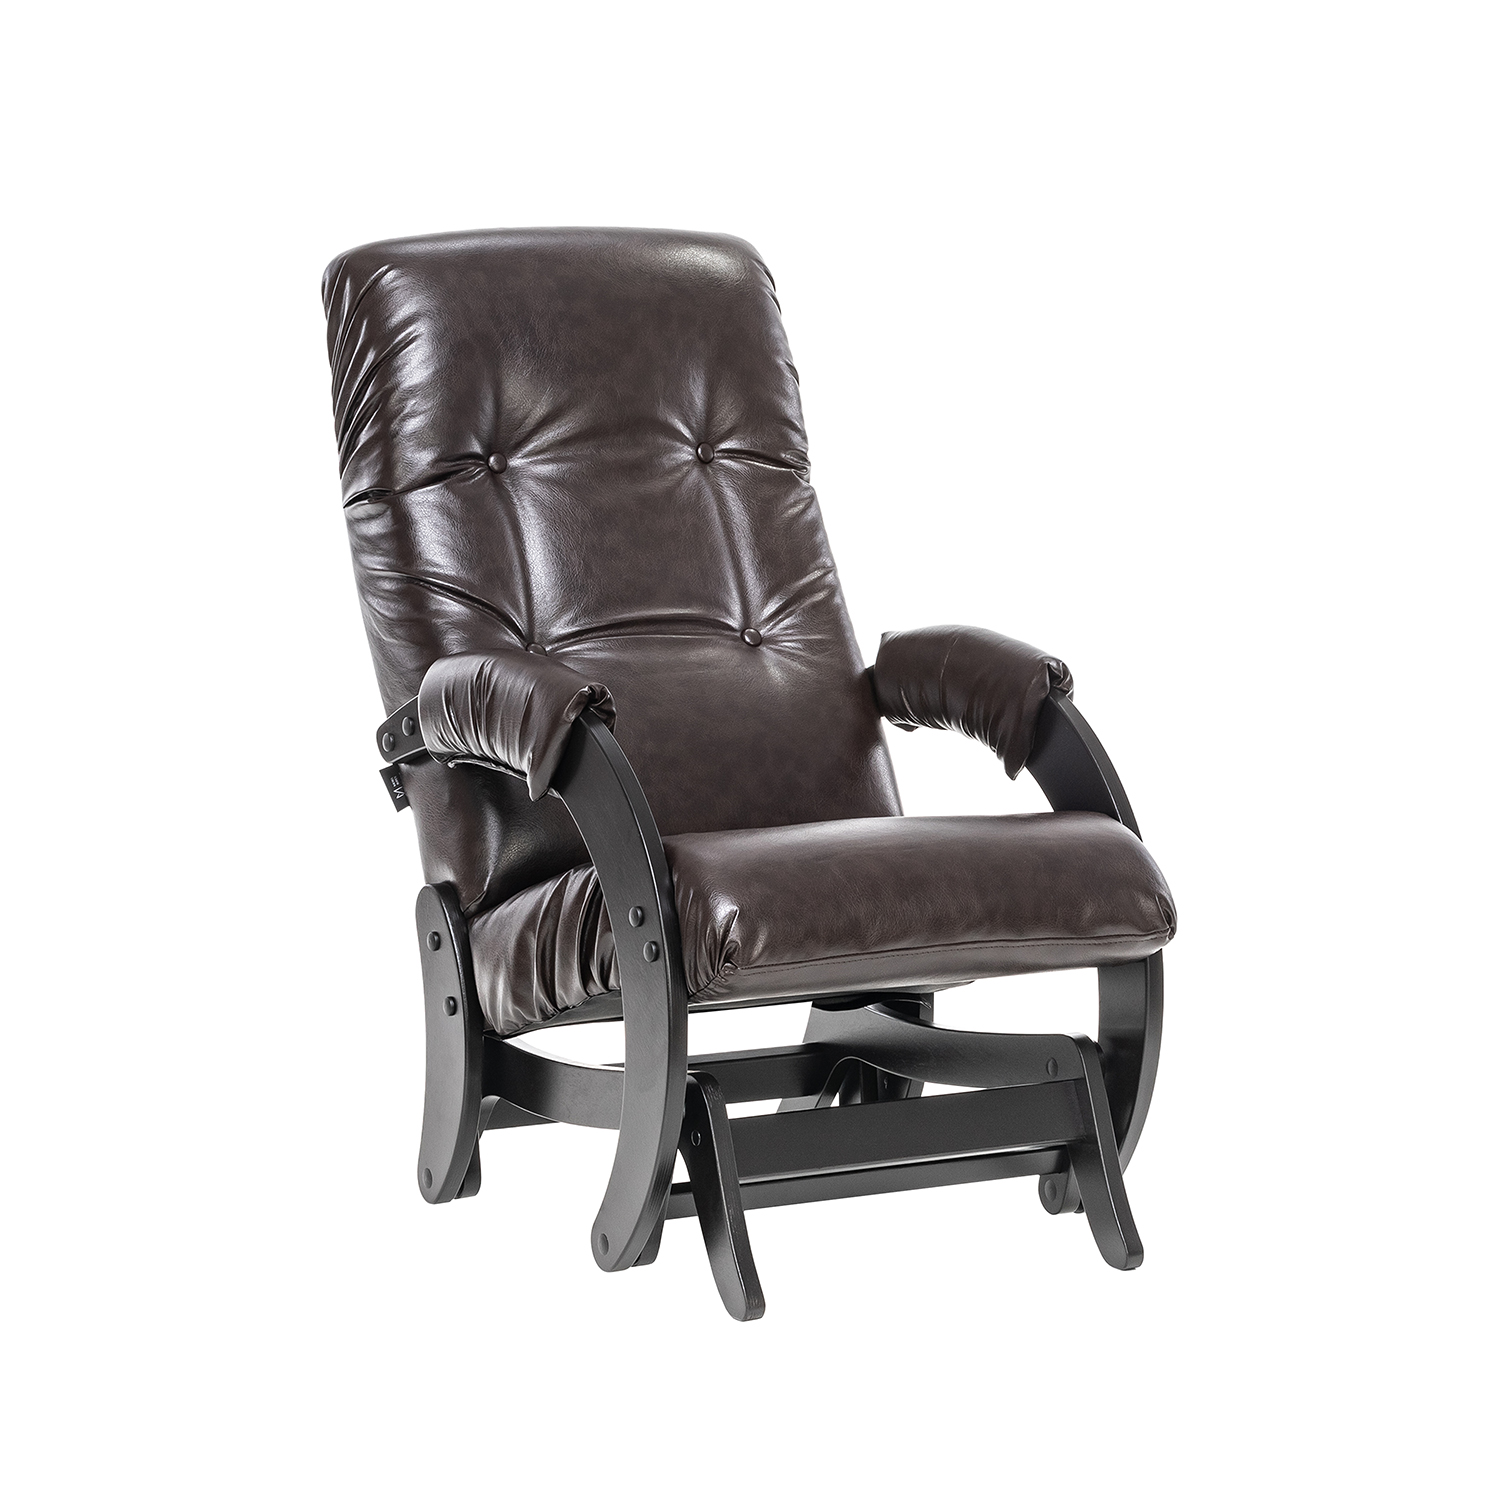 Кресло-глайдер Модель 68, венге, к/з Oregon perlamutr 120